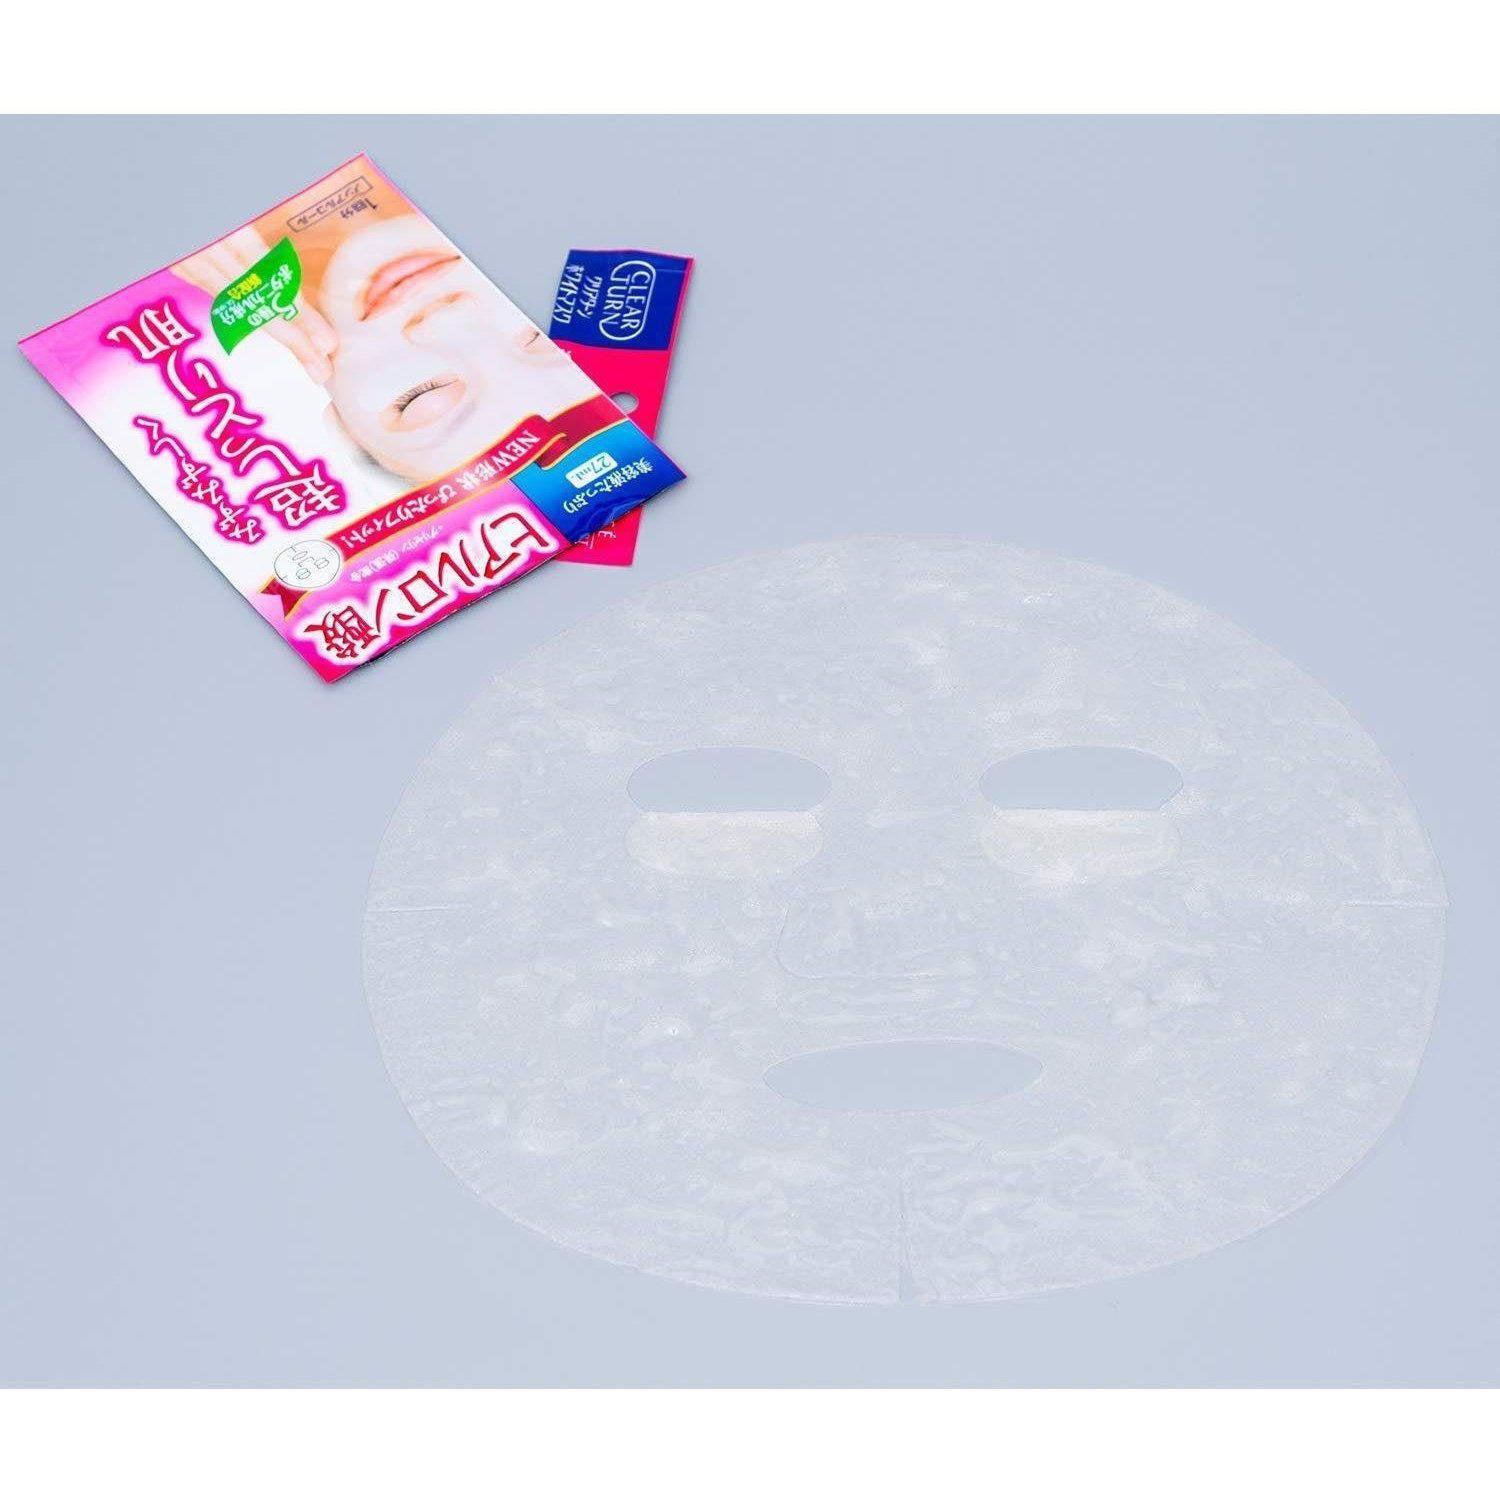 Kosé Clear Turn Mask Hyaluronic Acid 5 Masks